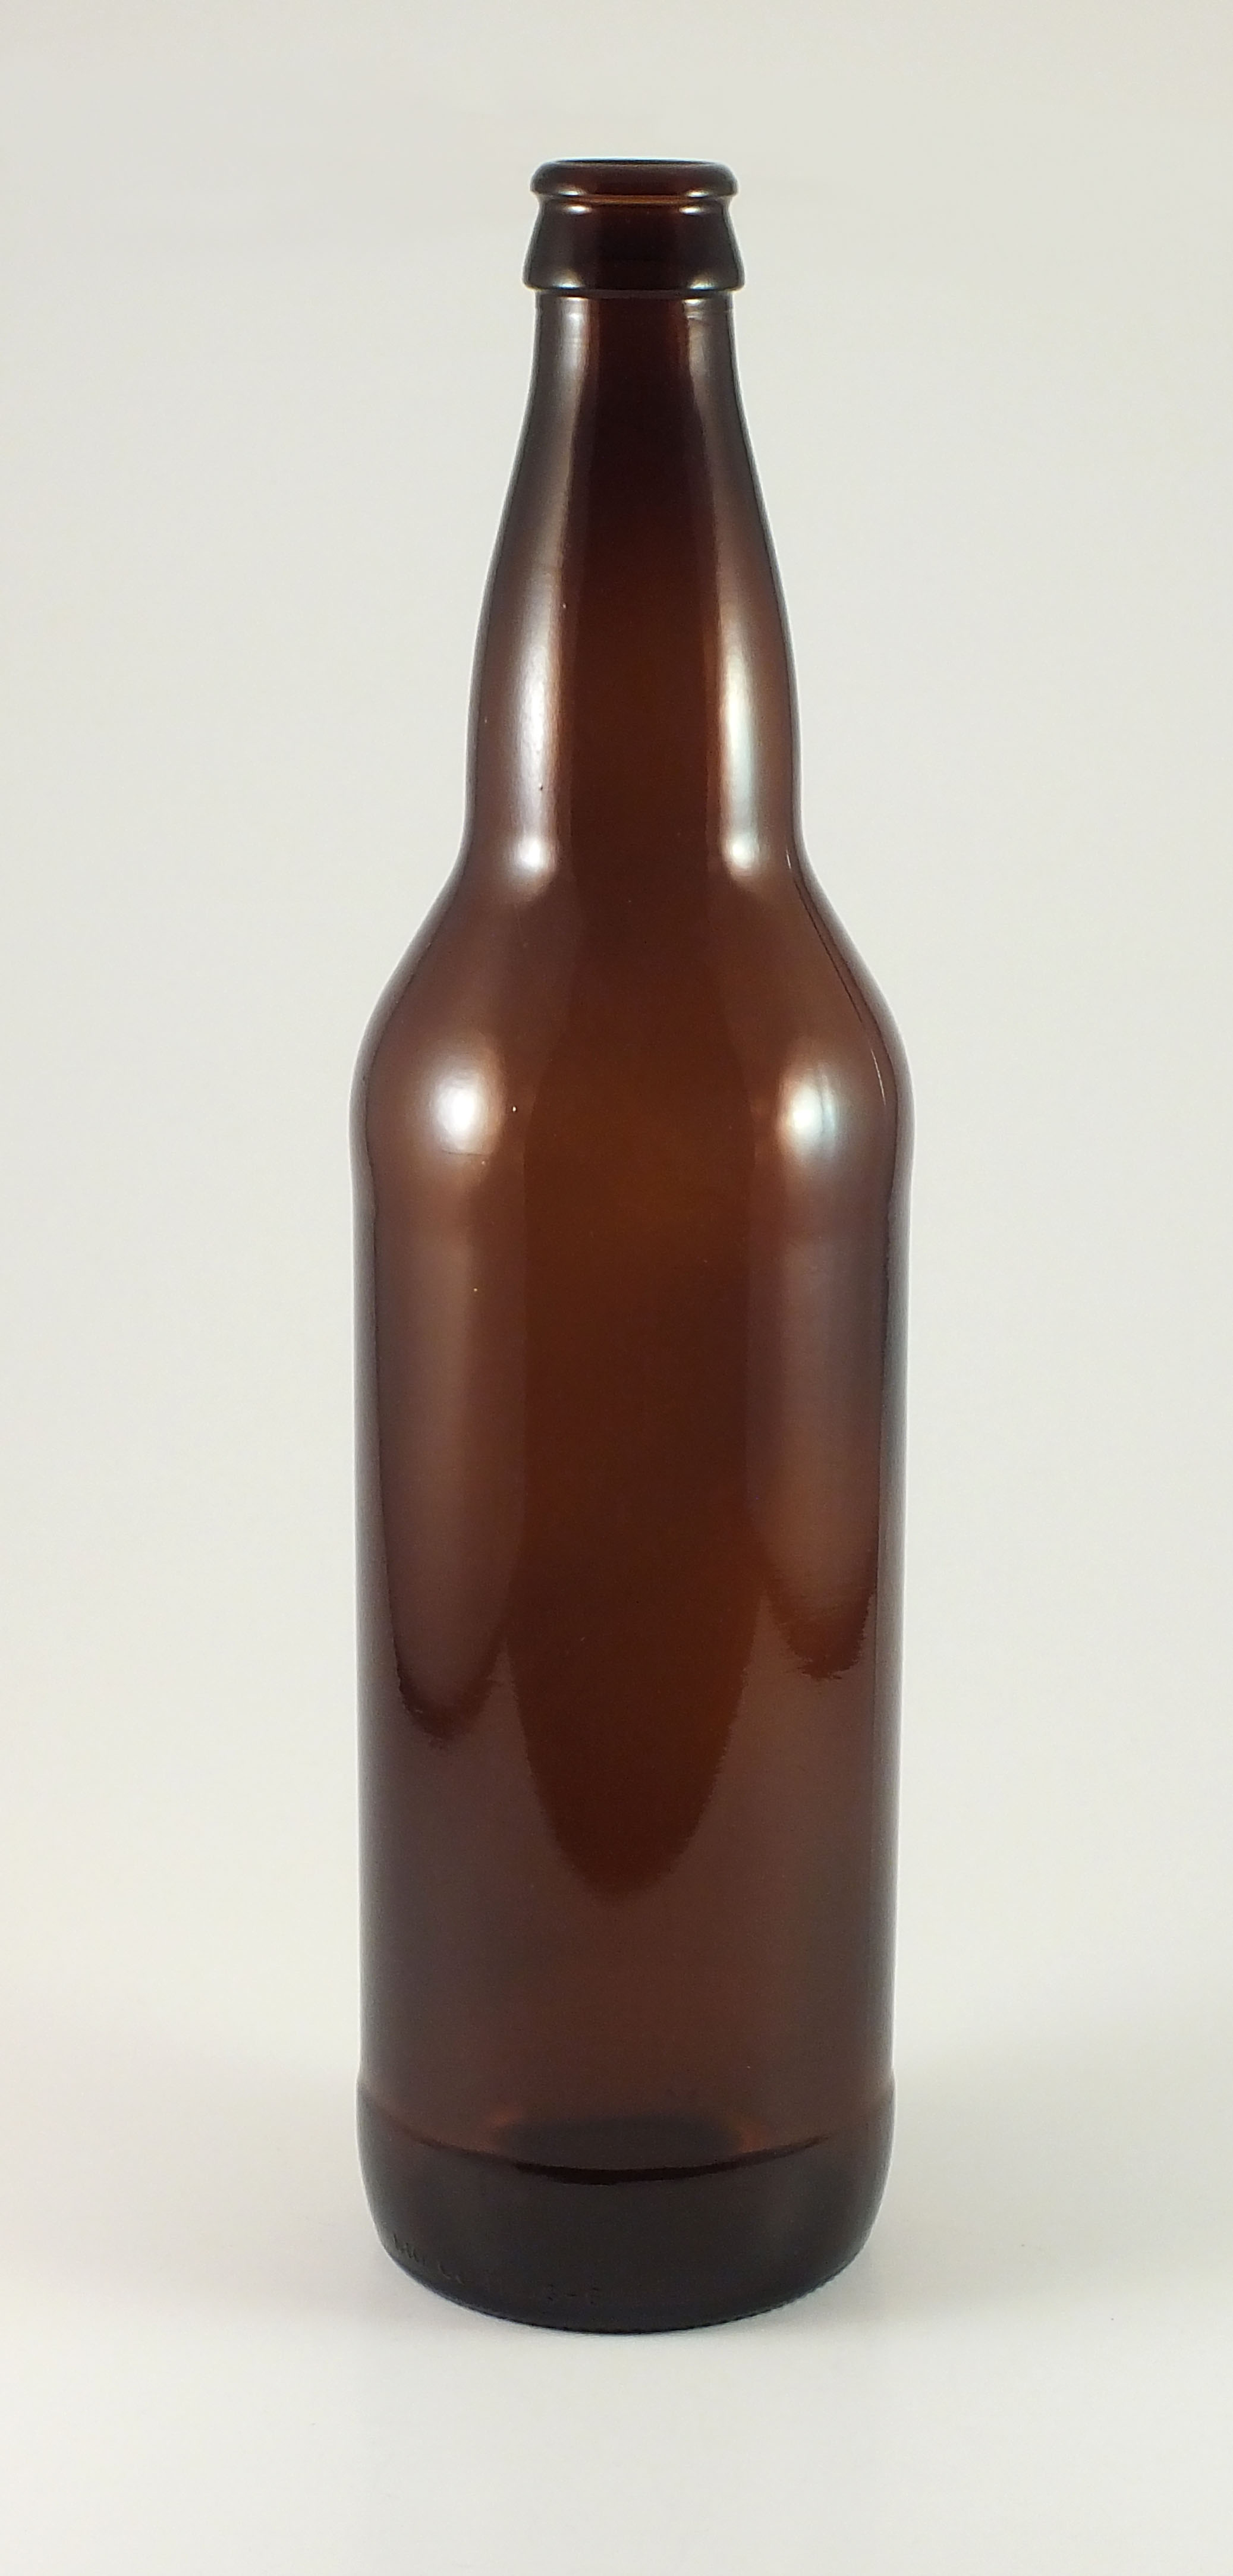 22 oz beer bottle - Amber/Brown Glass 22 oz Beer bottle Sold By 